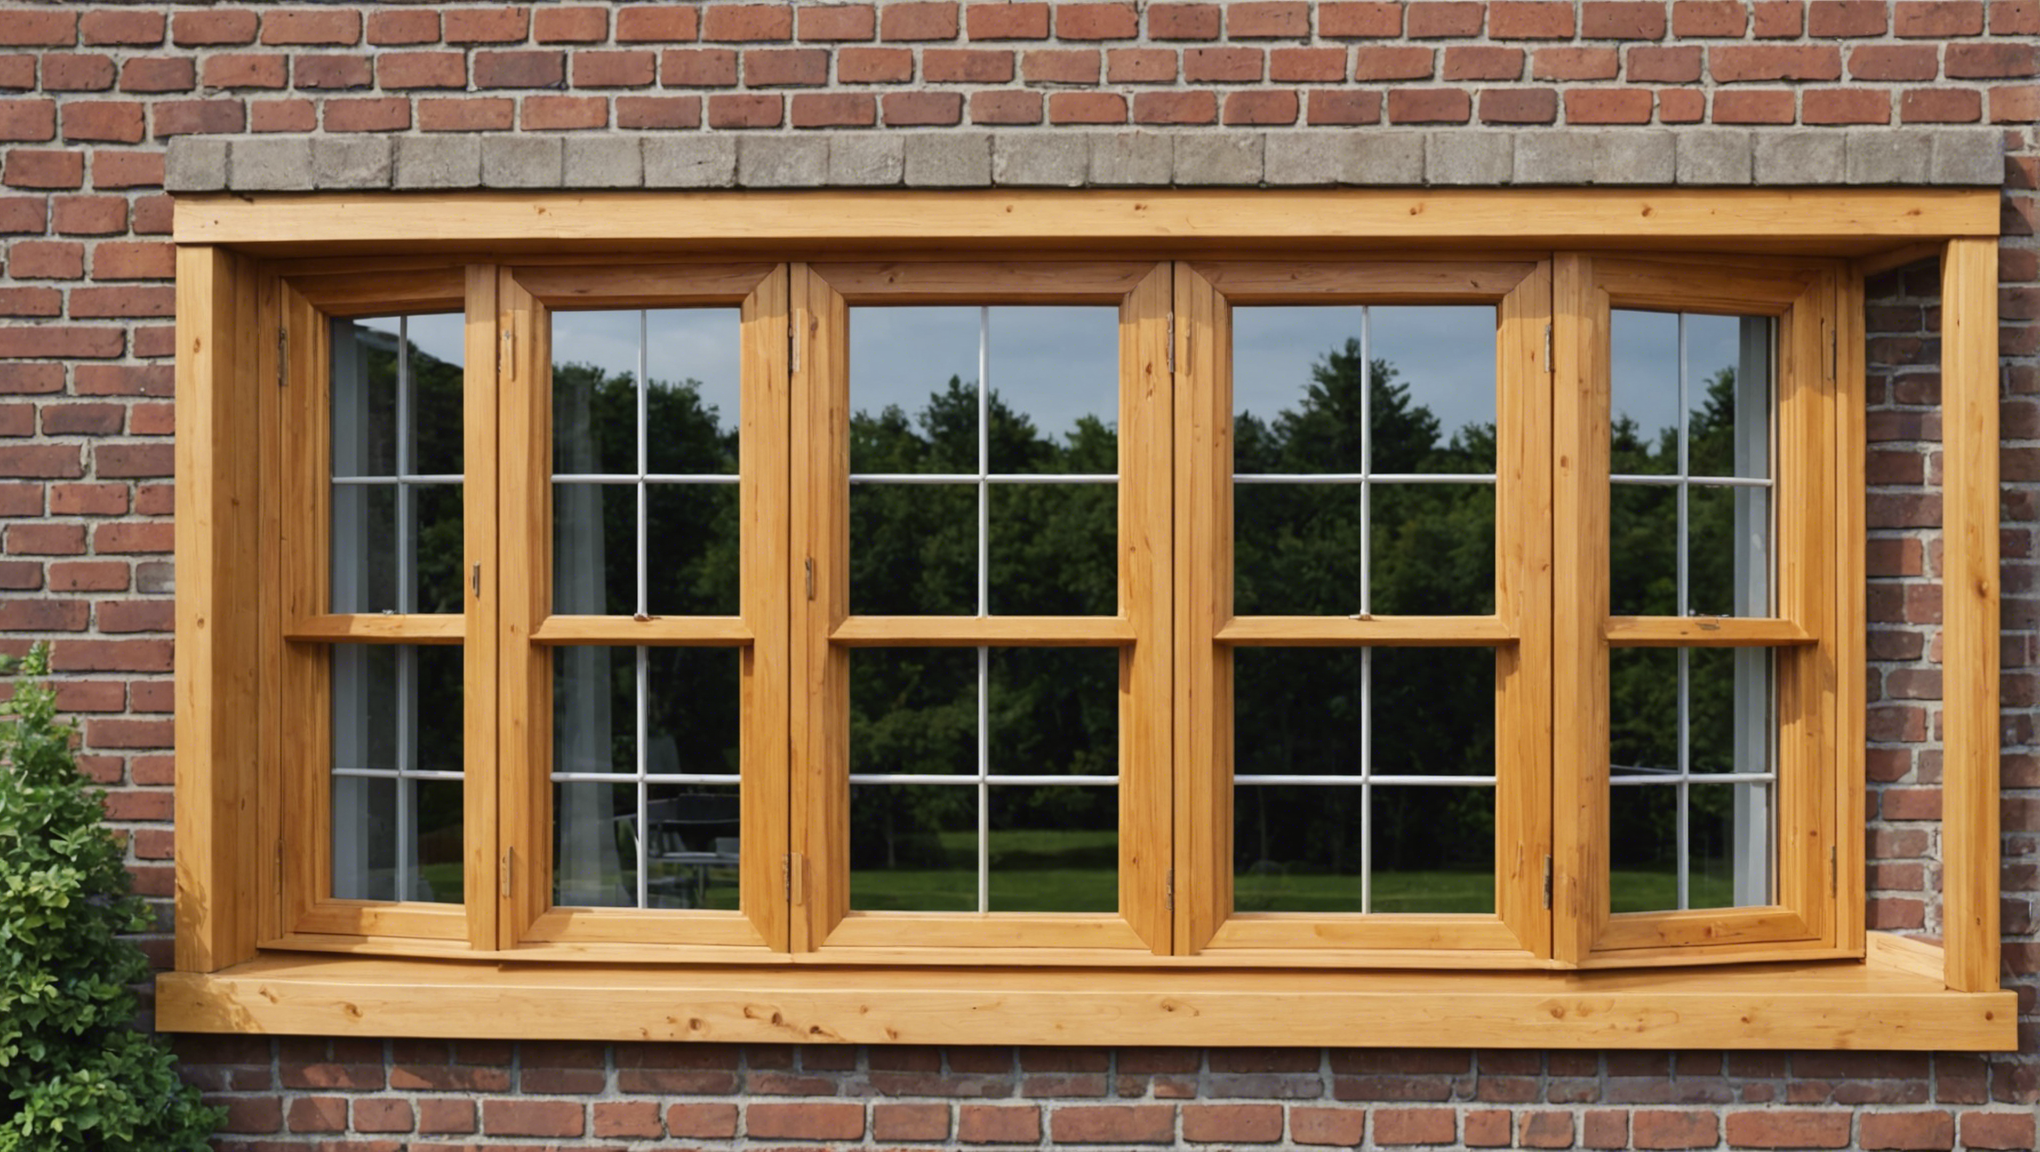 découvrez les avantages des fenêtres en bois avec double vitrage et trouvez les raisons de choisir ce type de fenêtres pour votre maison.